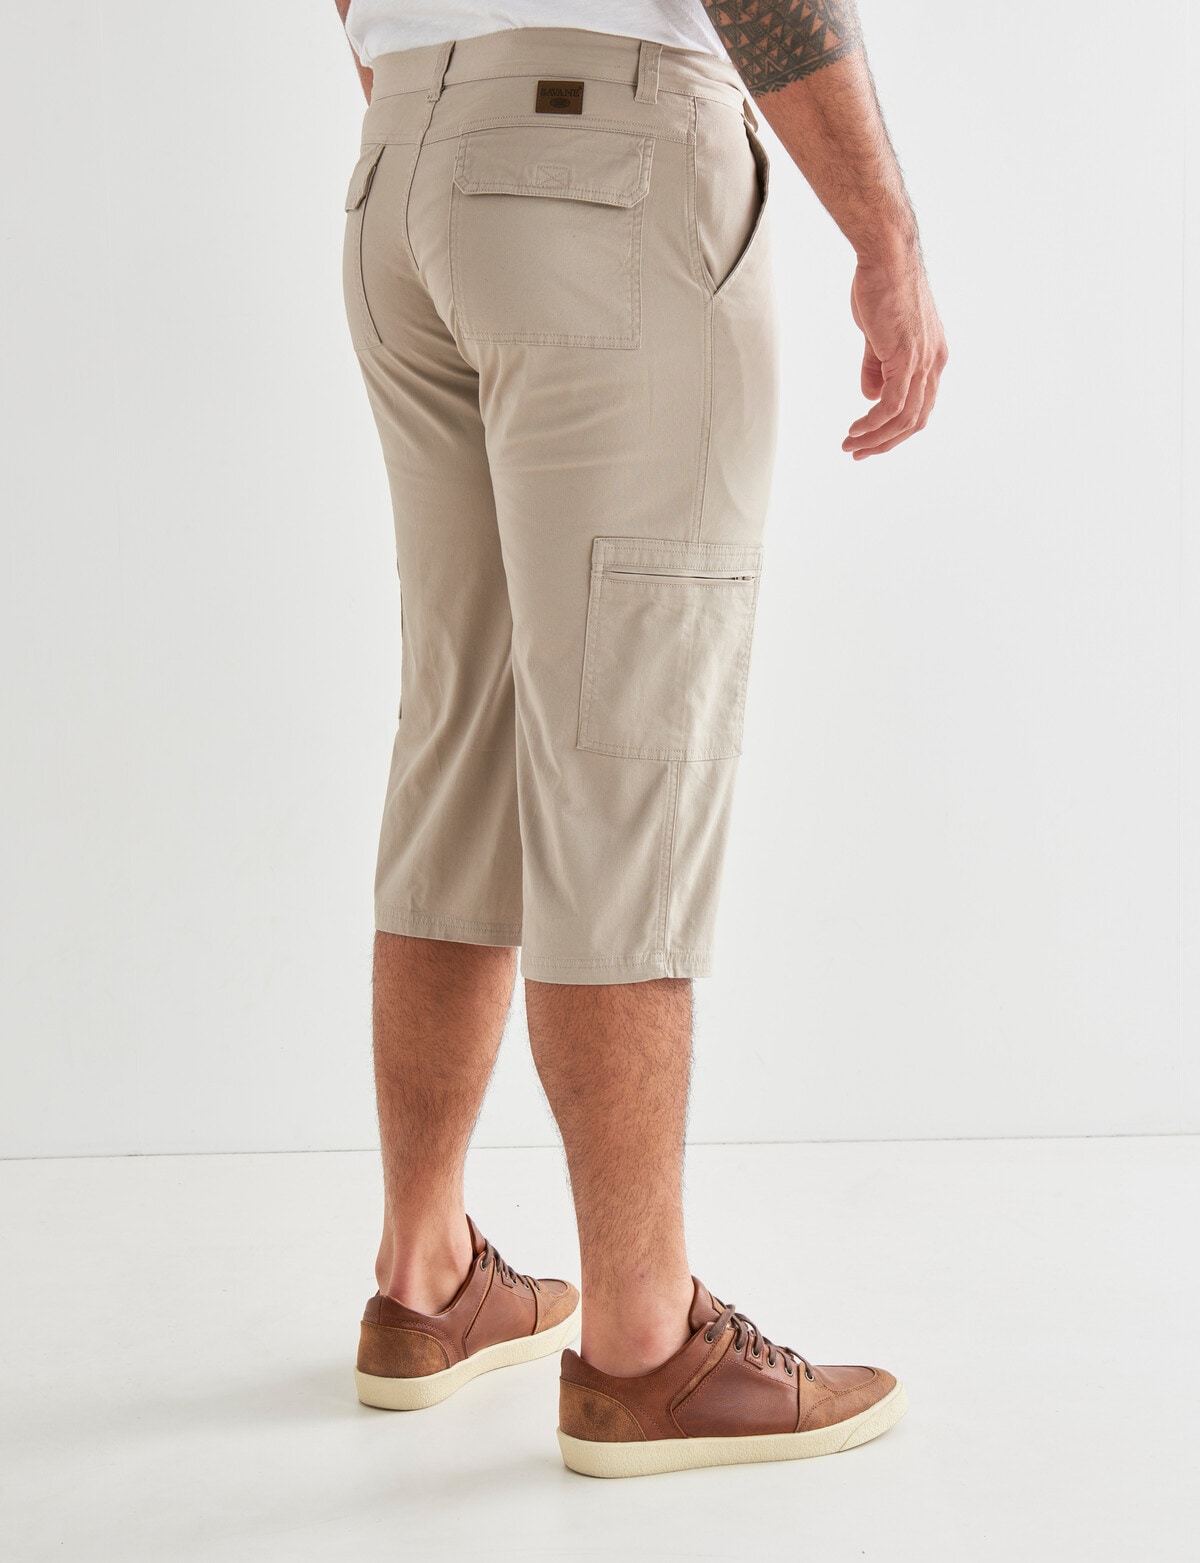 Men's 3/4 Long Capri Shorts – 33,000ft